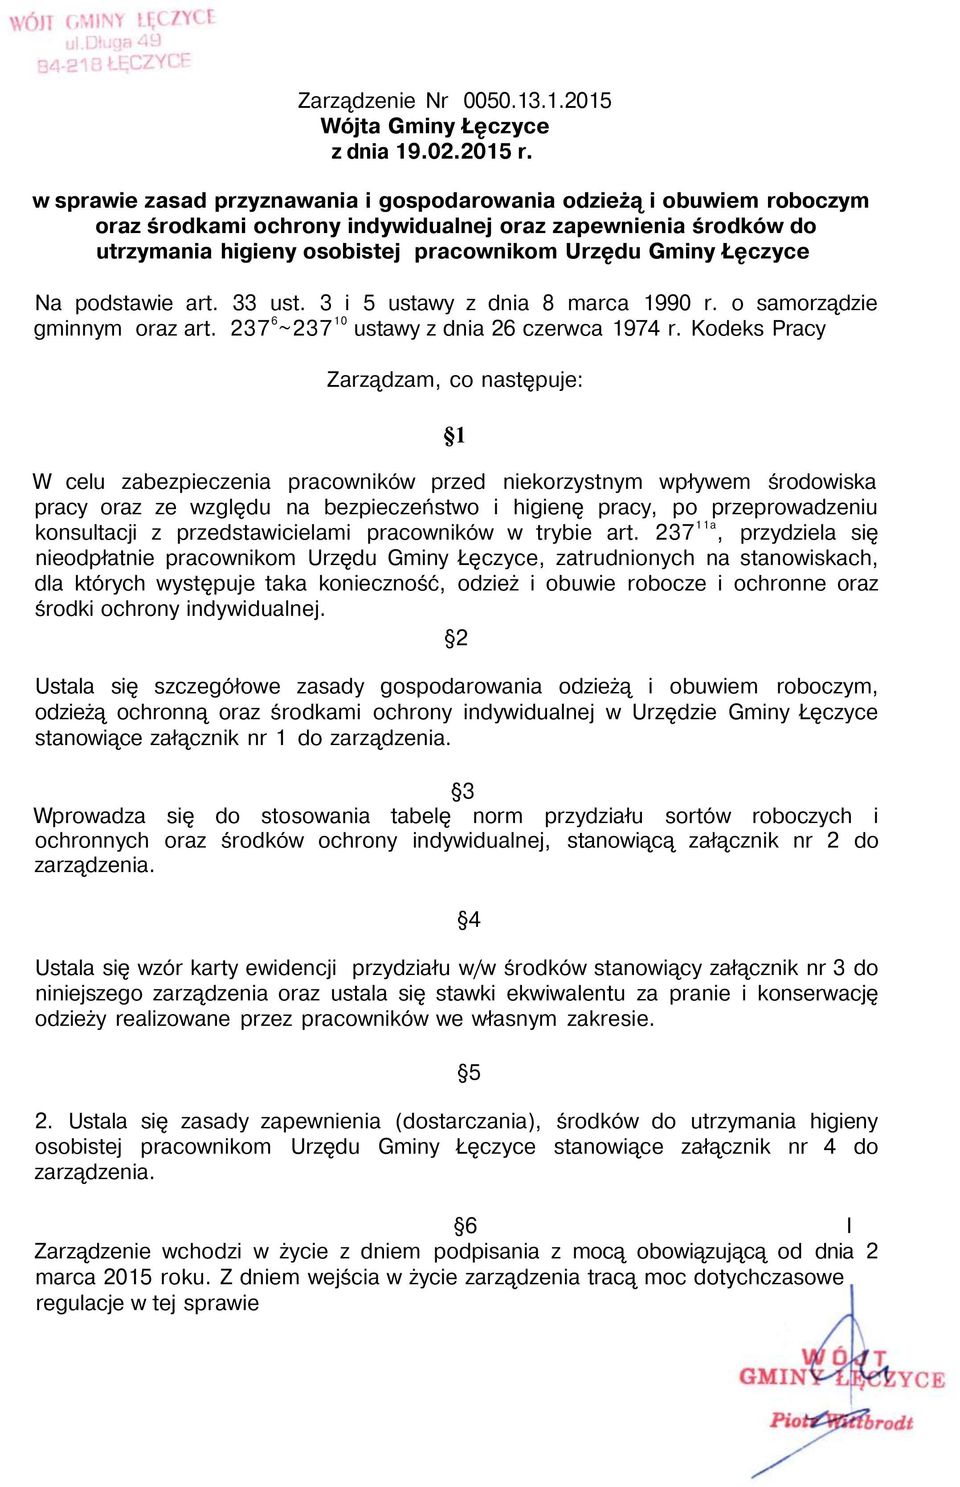 Na podstawie art. 33 ust. 3 i 5 ustawy z dnia 8 marca 1990 r. o samorządzie gminnym oraz art. 237 6 ~237 10 ustawy z dnia 26 czerwca 1974 r.